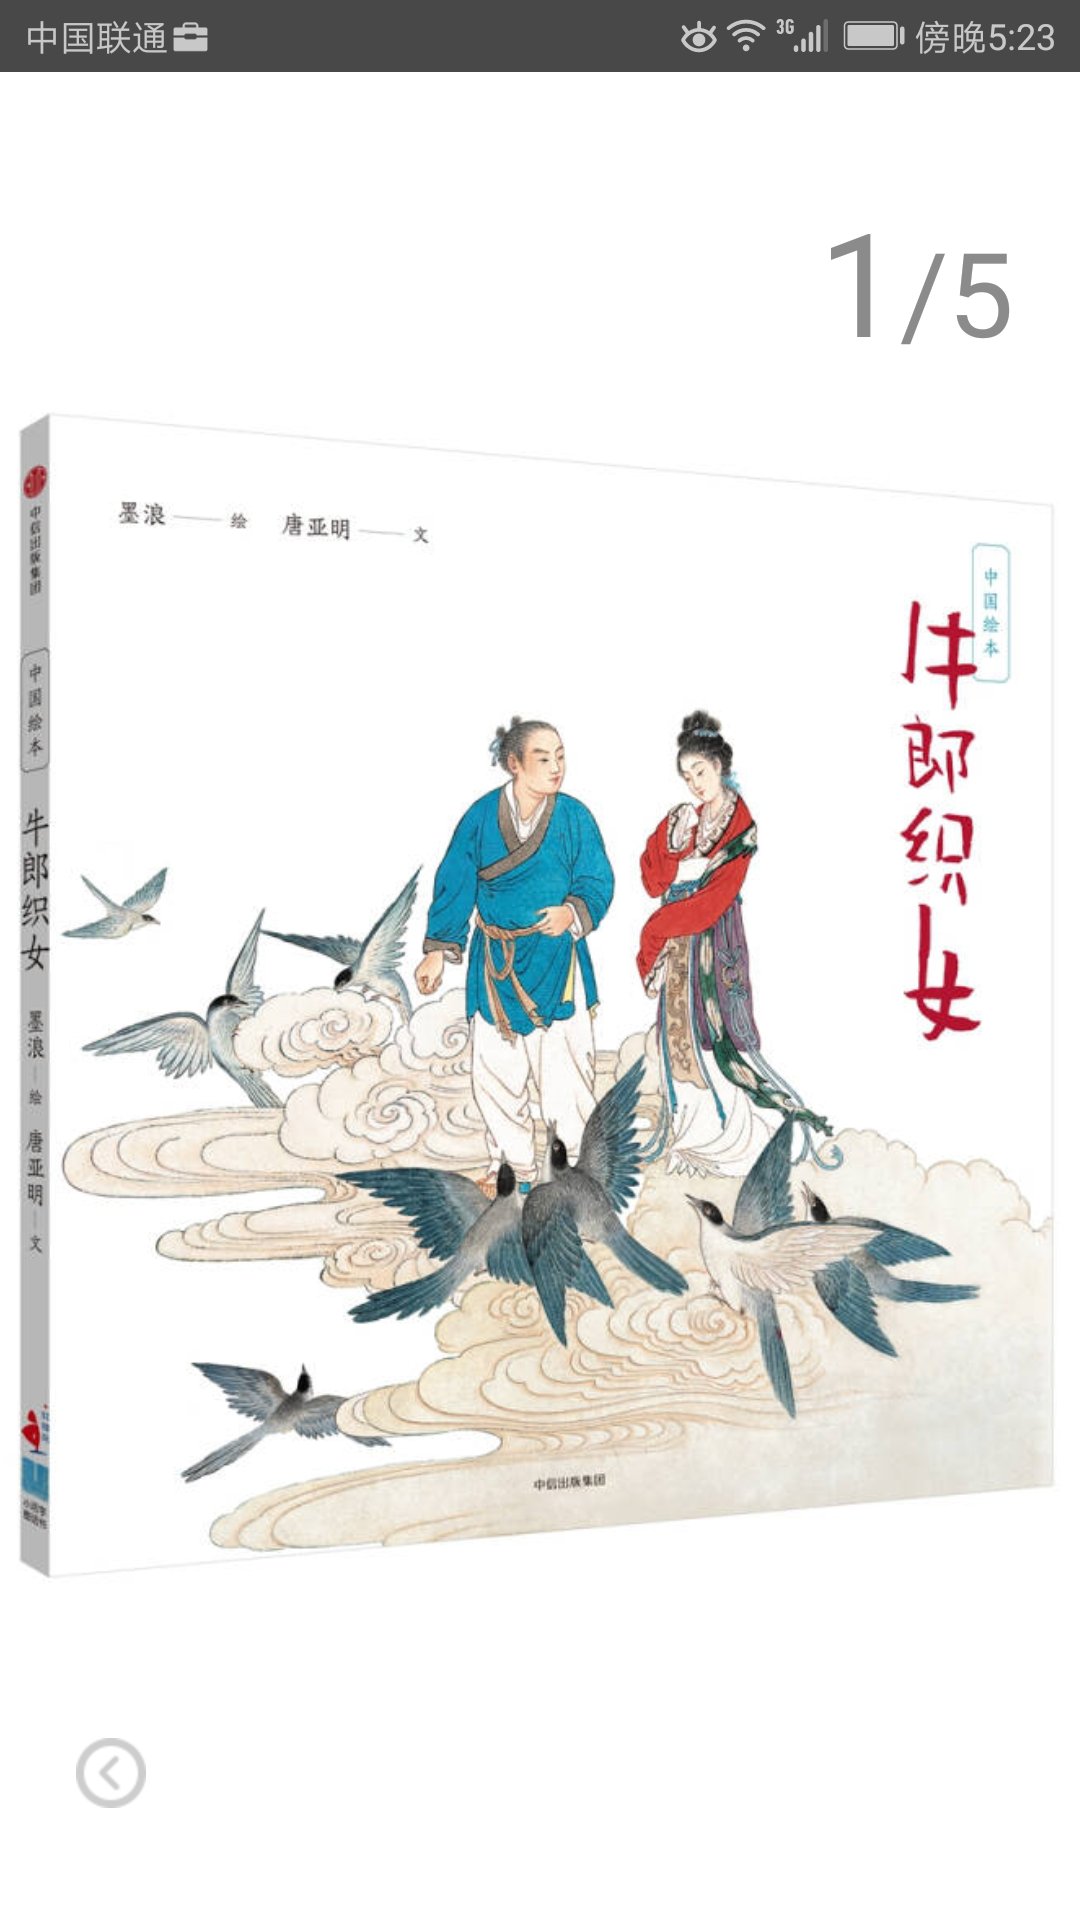 中信出版社推出的中国绘本系列，绘图生动可读性强，是给孩子普及传统文化的好读物。